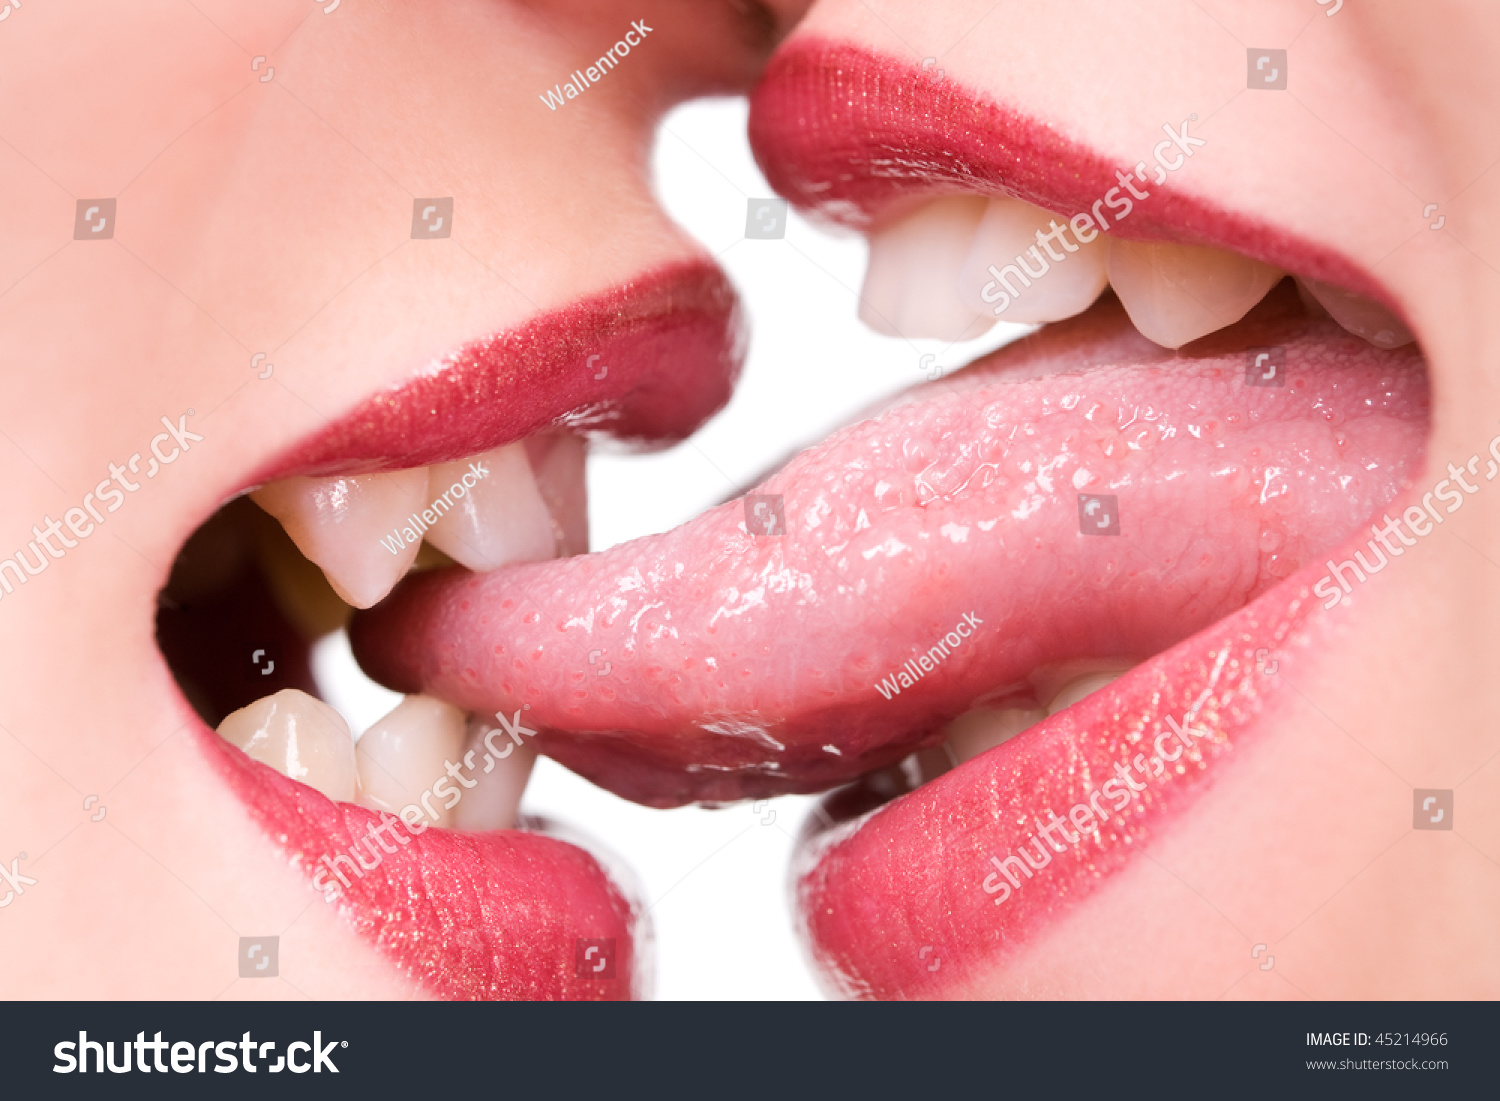 Девушка лижет язык парня. Губы с языком фото. Поцелуй в губы. Женский поцелуй. Поцелуй с языком.